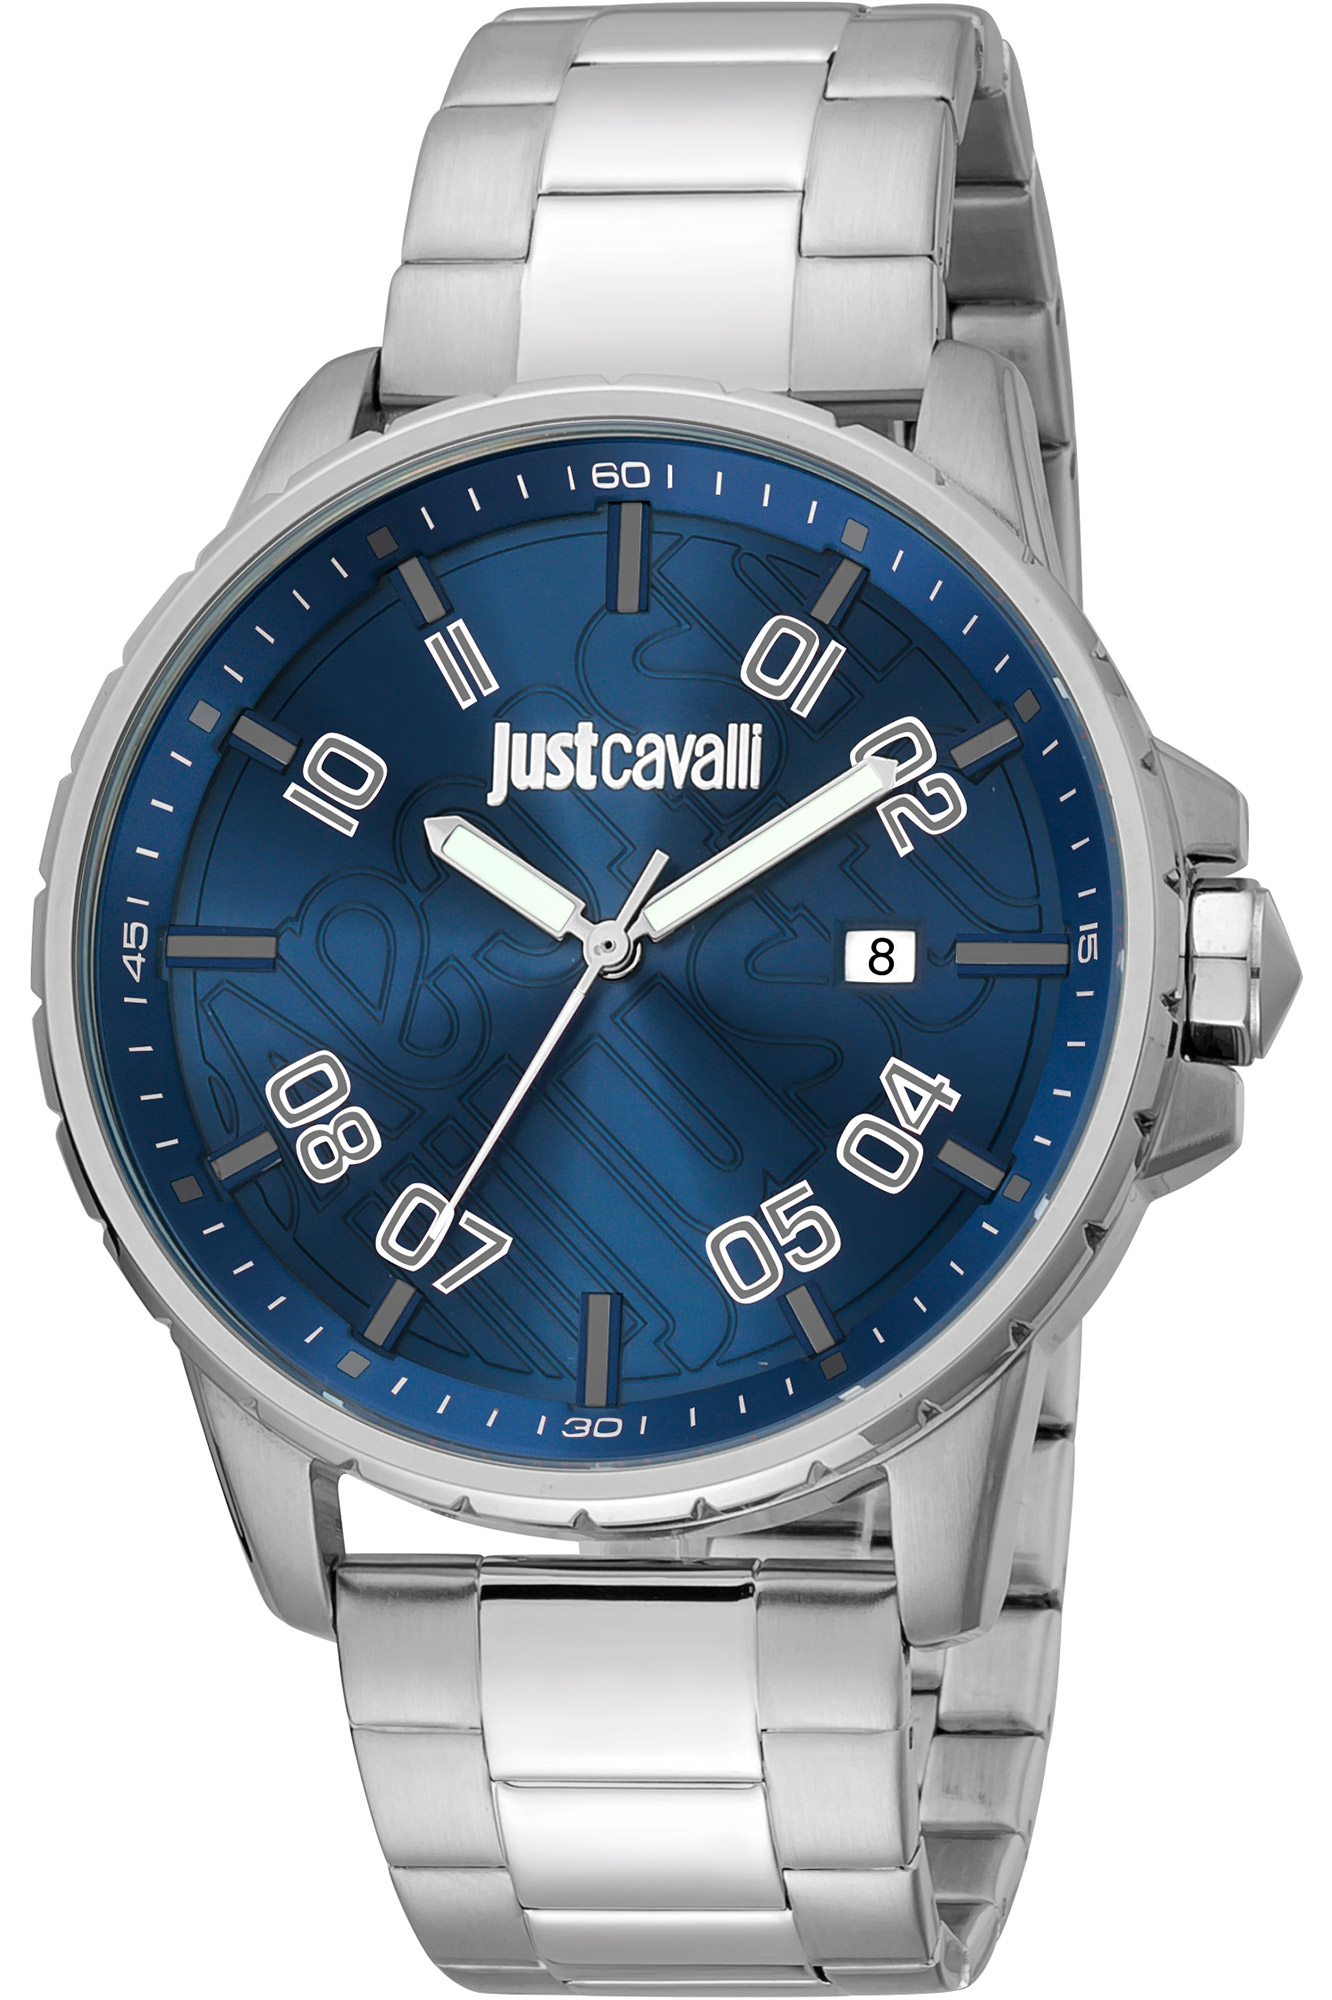 Giovane Steel Blue - Just Cavalli Watches